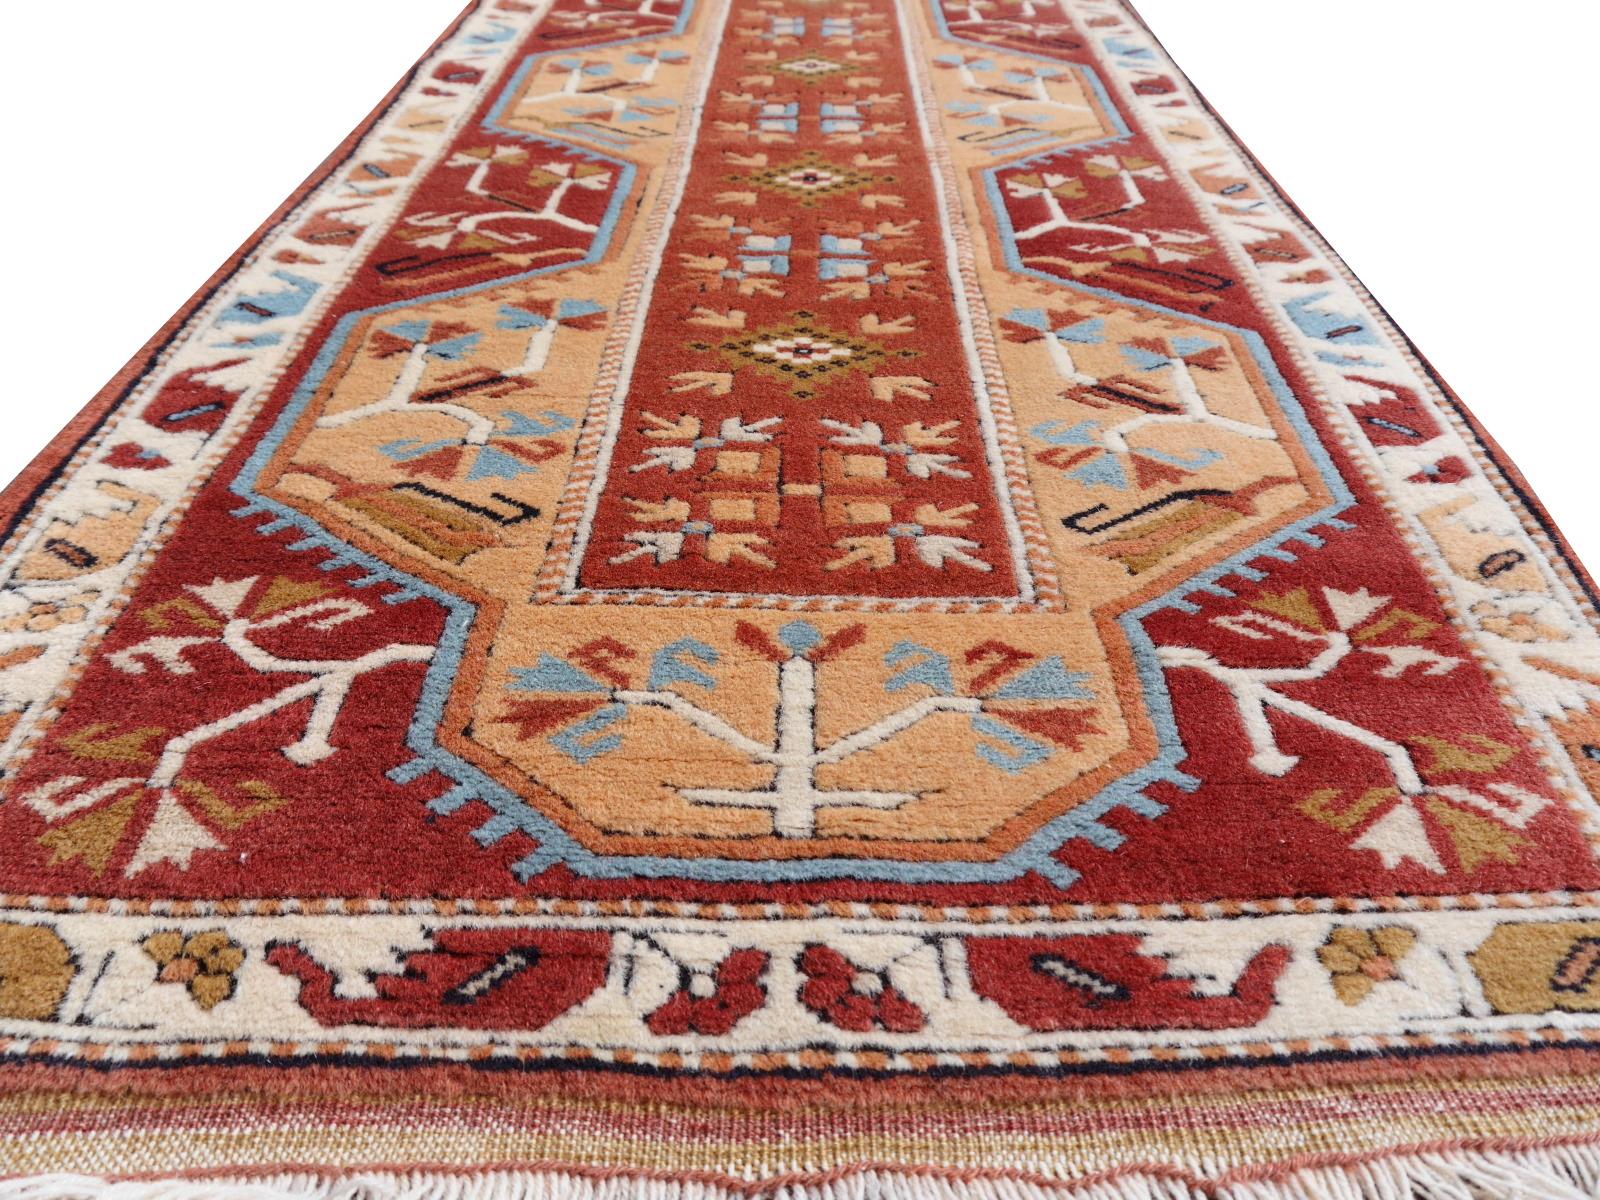 Wunderschöner Wollteppich für Treppen und Flure, handgeknüpft in der Türkei.

Oushak-Designteppiche werden hauptsächlich aus feiner, handgesponnener Wolle hergestellt, 
Dieses wunderschöne und beeindruckende Exemplar stammt aus